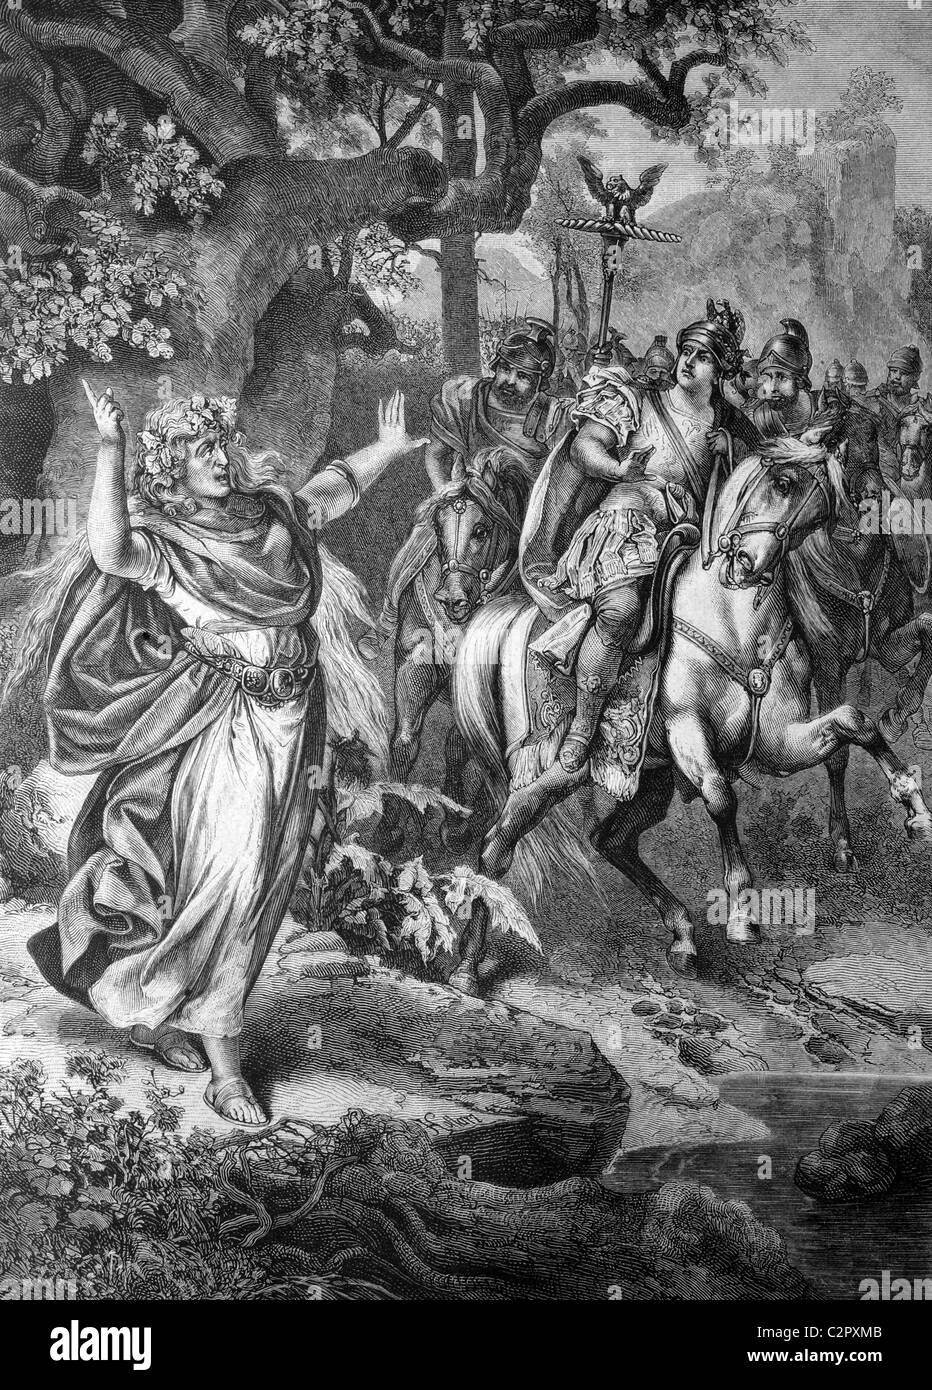 Visionario germanico ostruendo il passaggio del condottiero romano Nerone Claudio Druso, 38 BC- 9 BC, egli sta forzando il suo modo in Germania Foto Stock